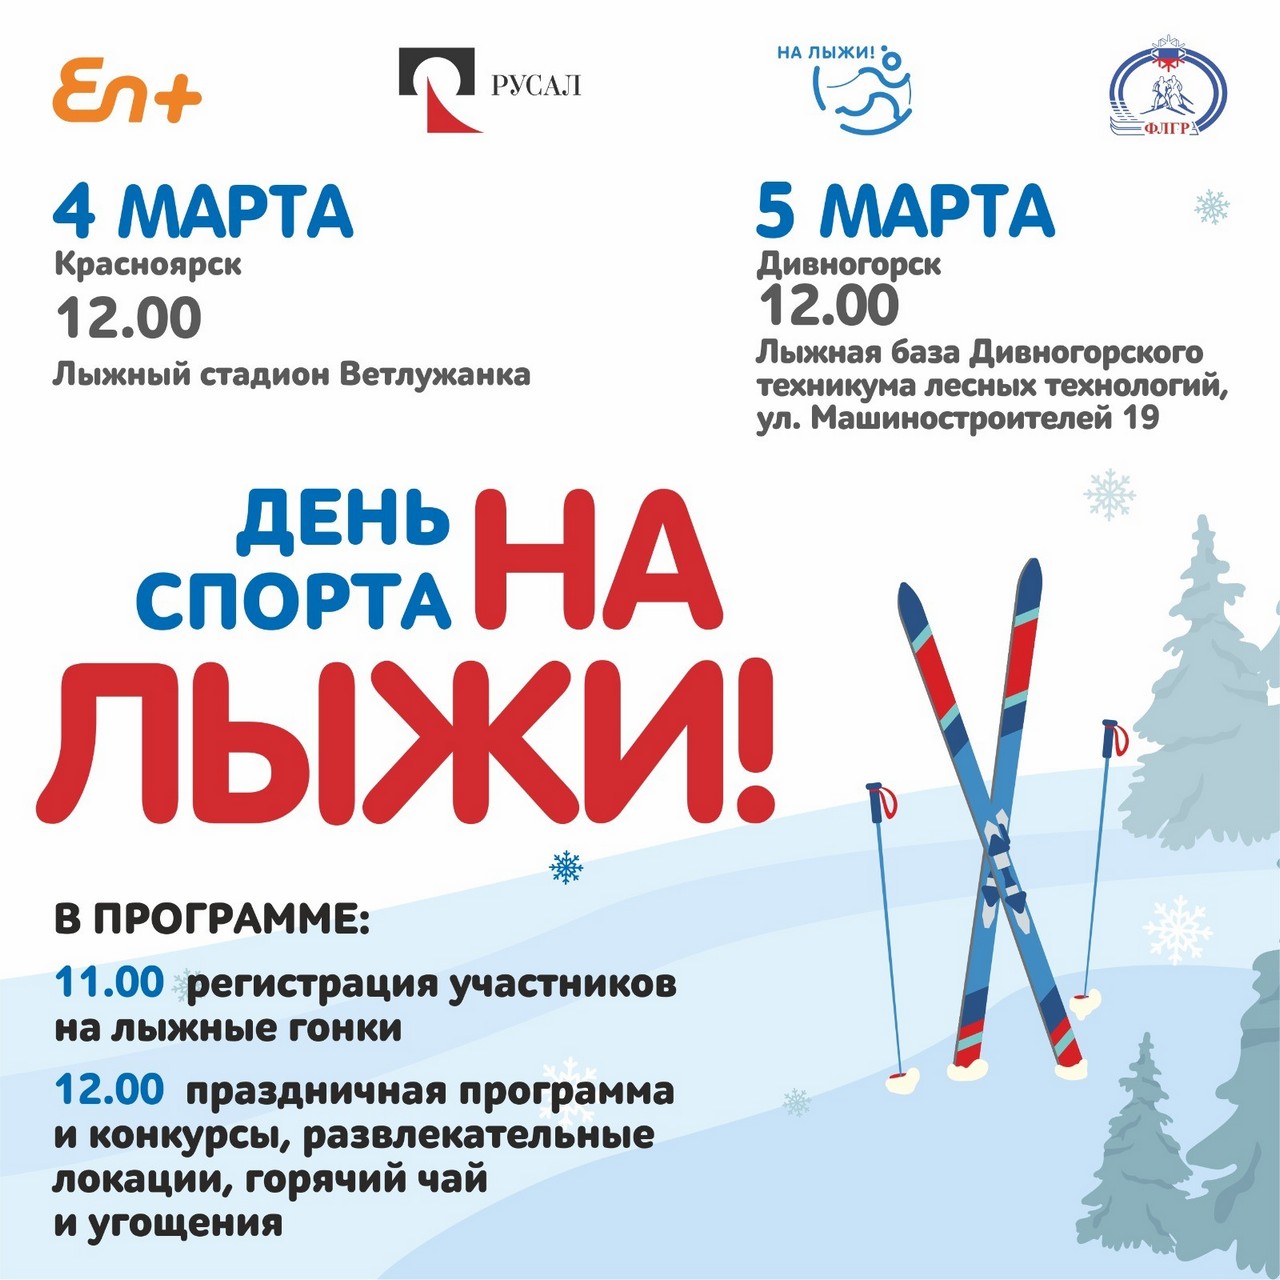 РУСАЛ и Эн+ приглашают отпраздновать День спорта «На лыжи» в Красноярске и Дивногорске